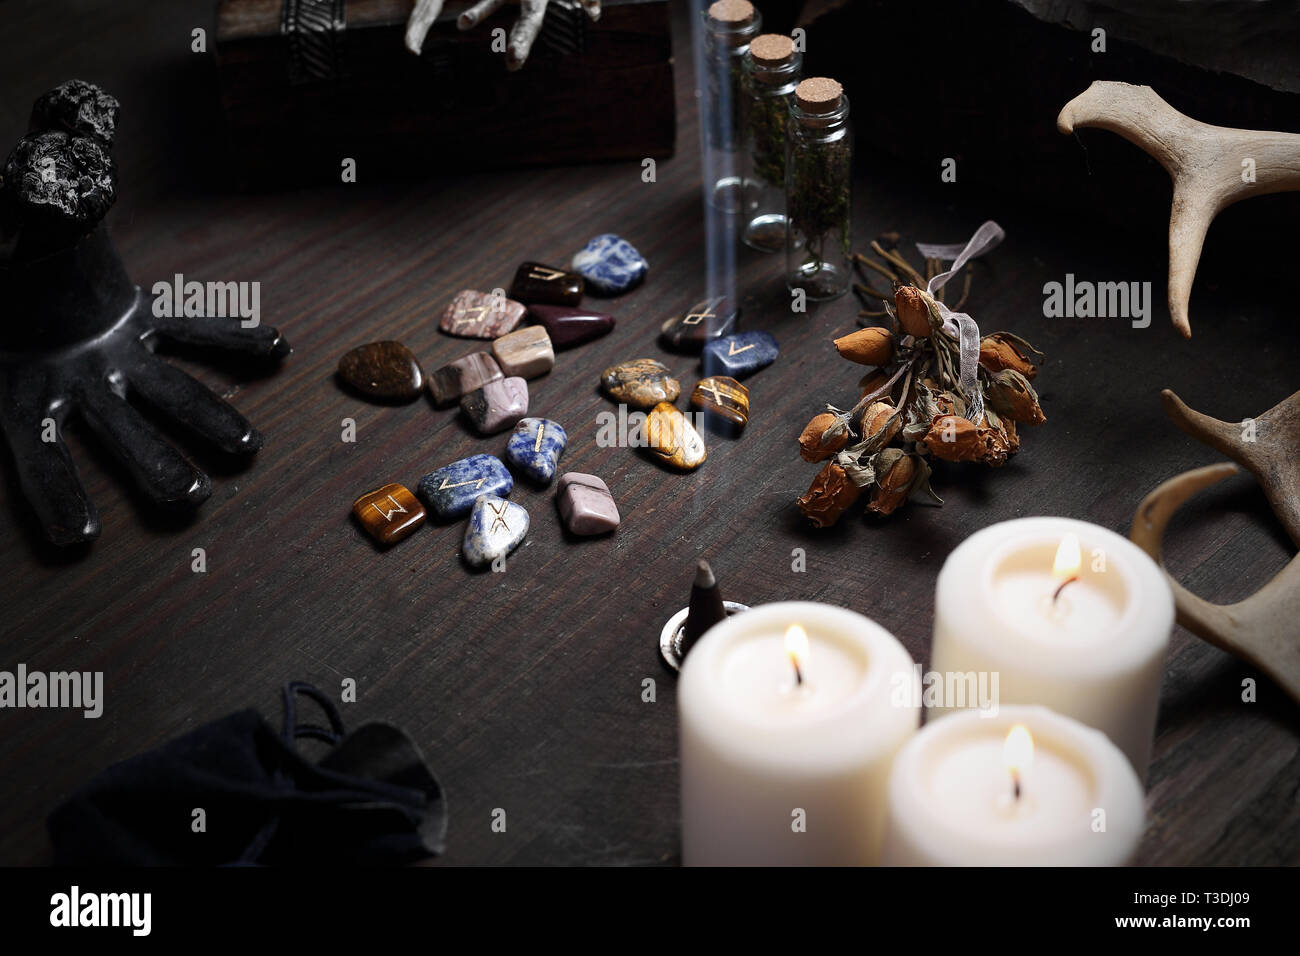 Rituali magici, simboli delle rune, visita al salone fiera del Foto stock -  Alamy